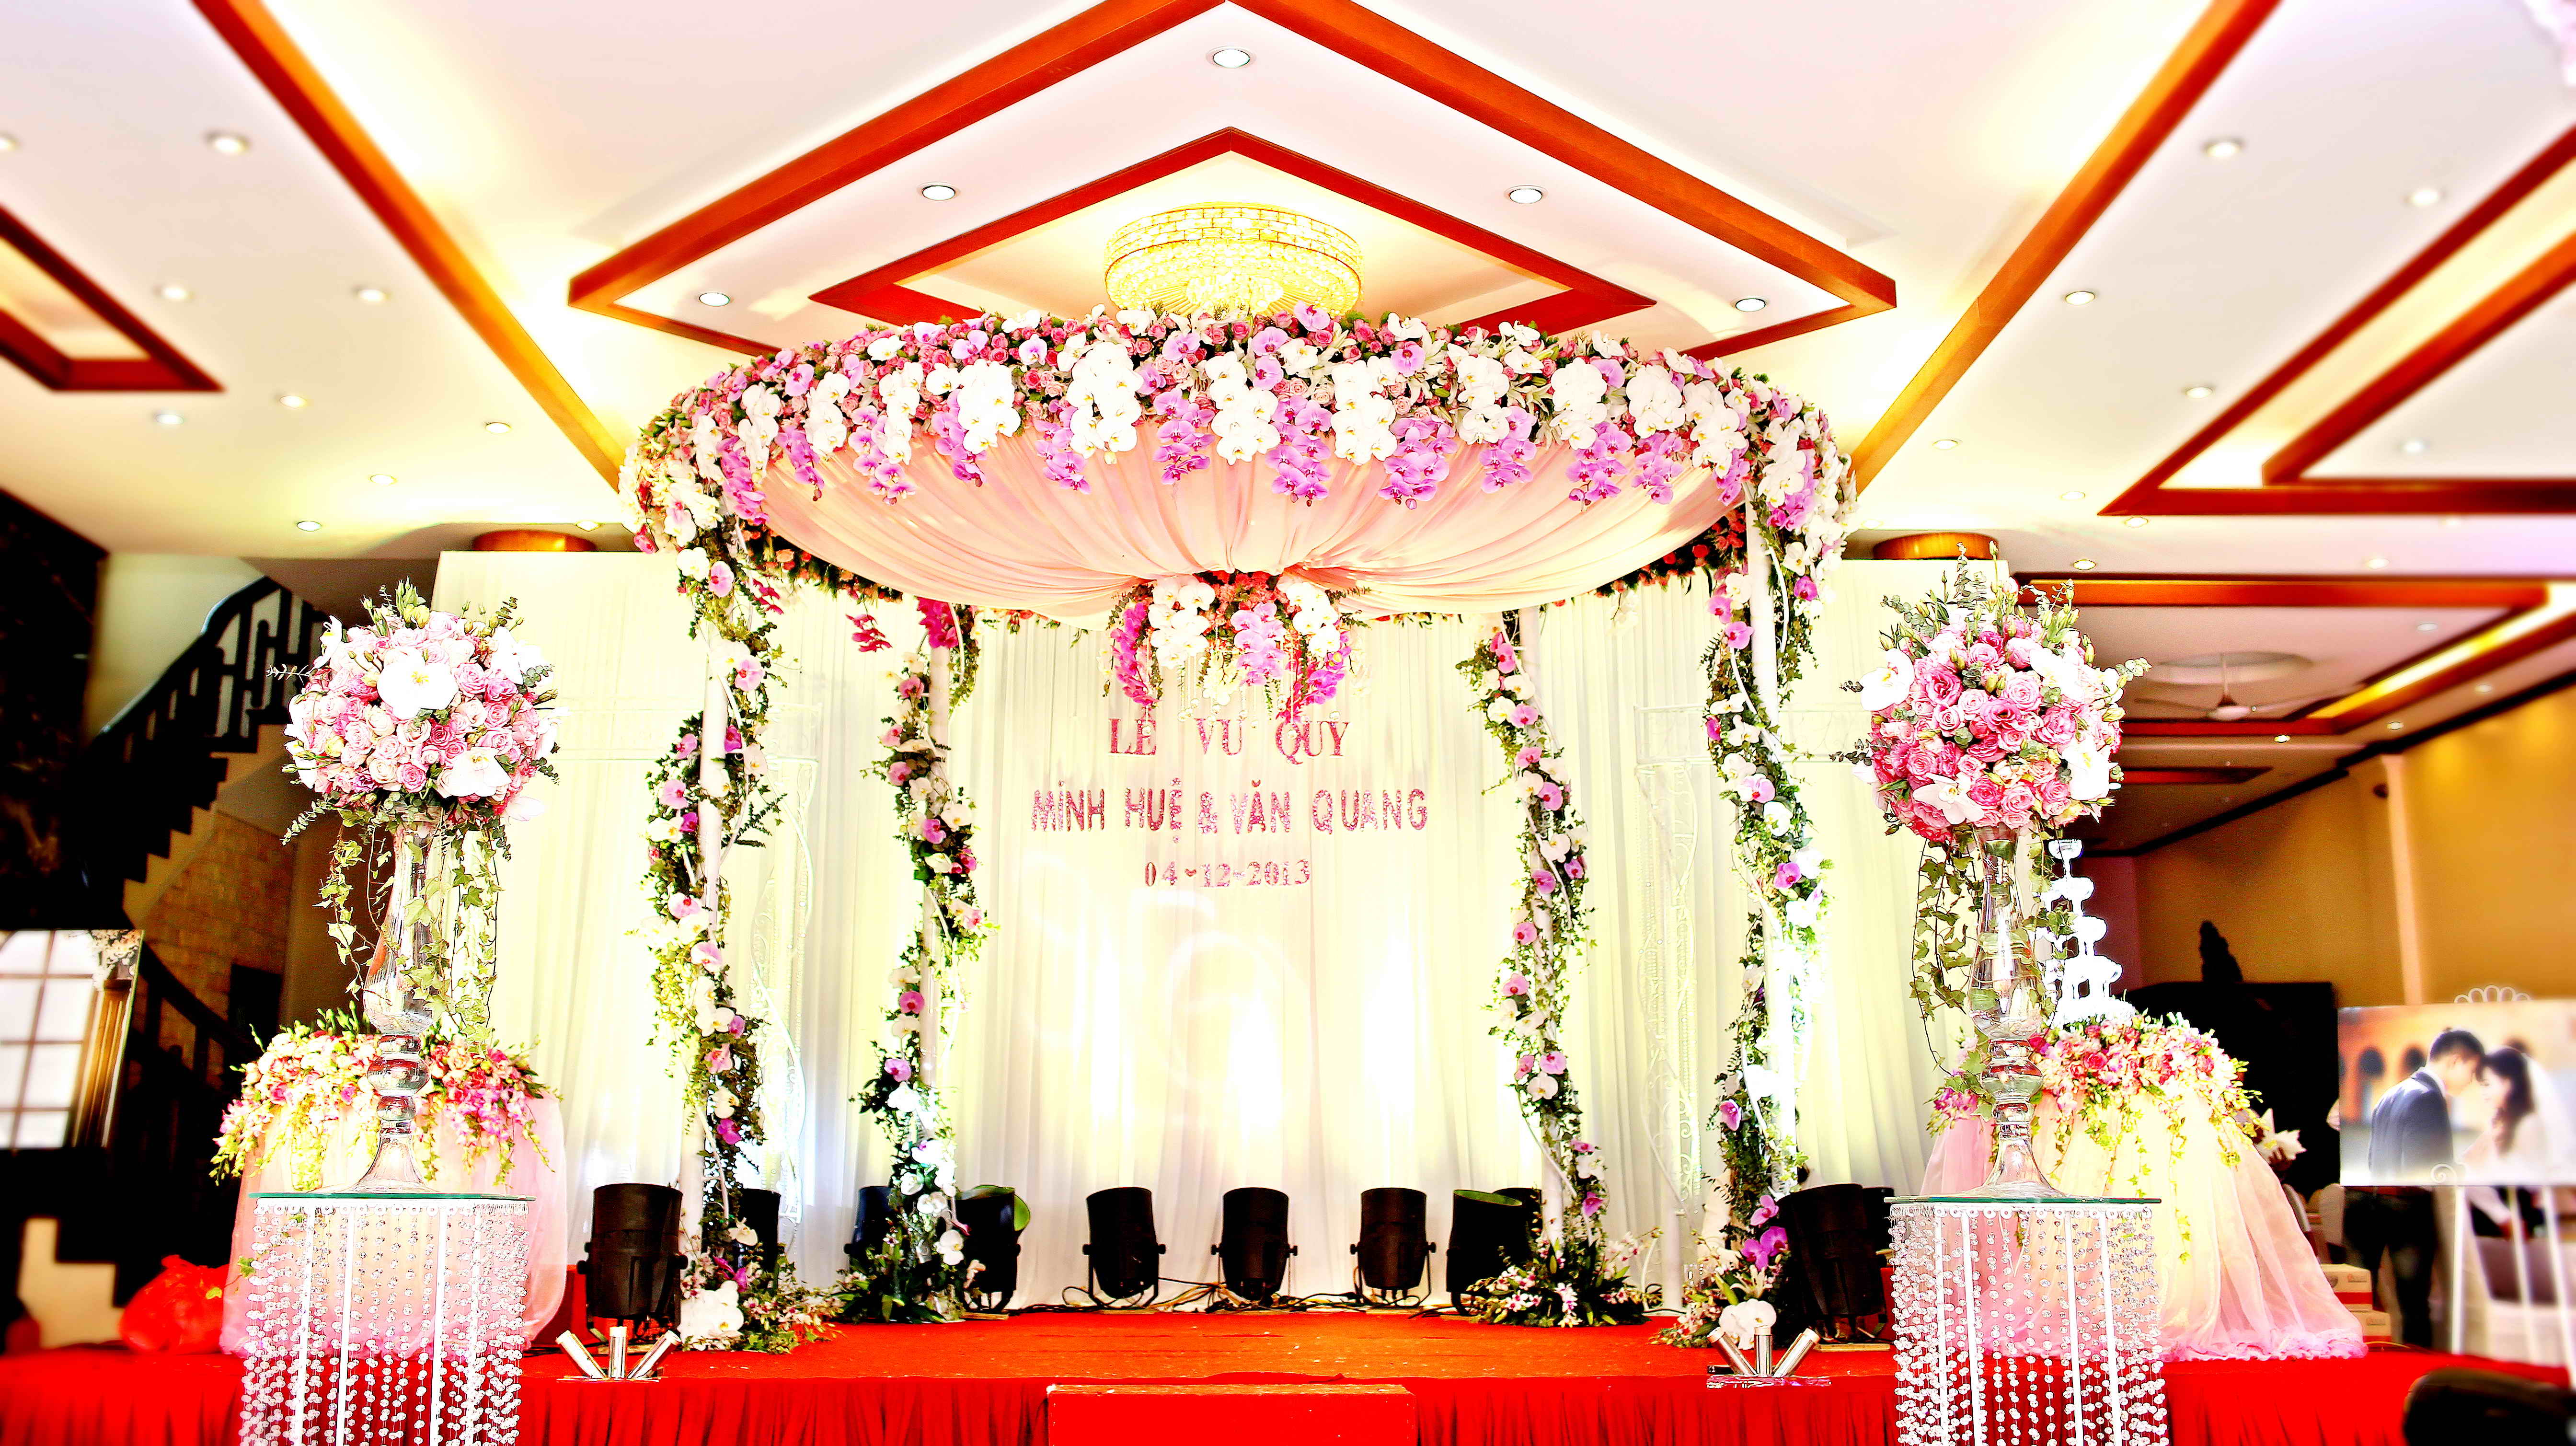 Hình ảnh trang trí sự kiện cưới Văn Quang - Minh Huệ tại tư gia